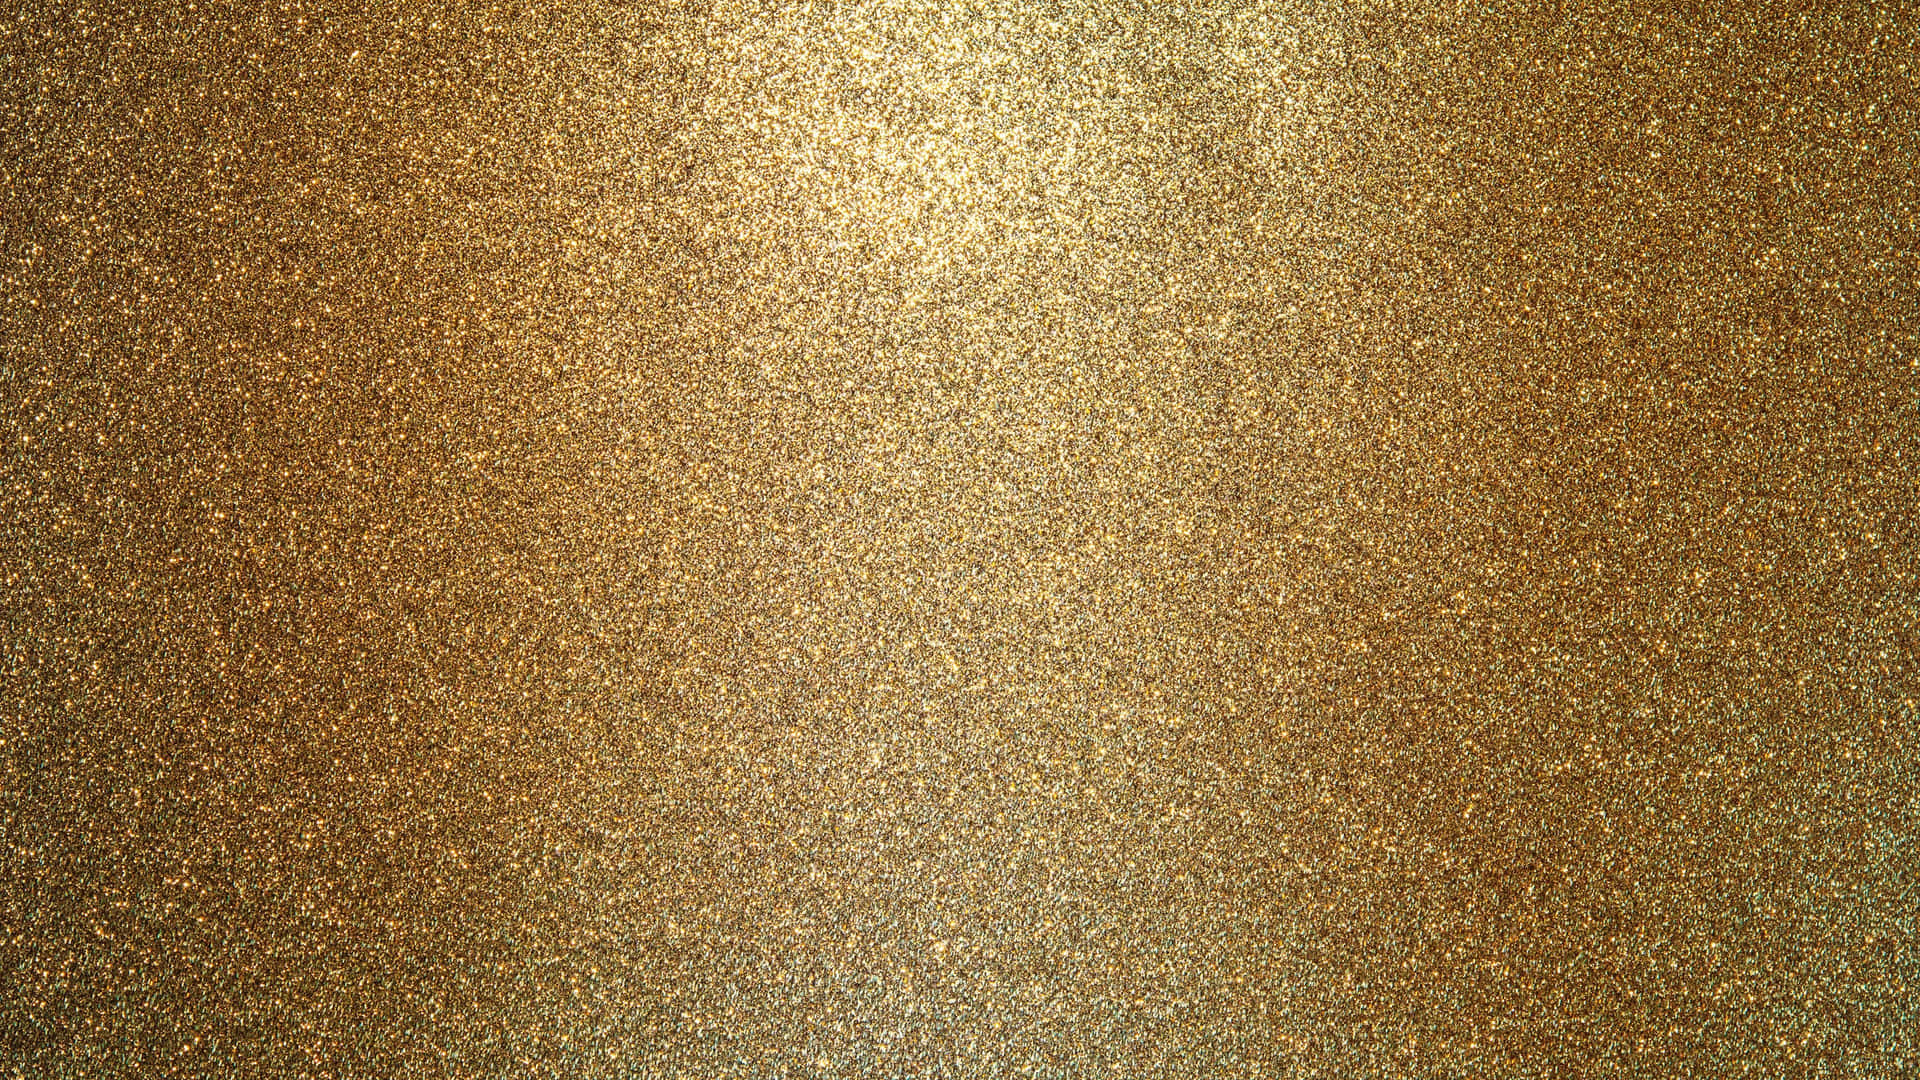 Immaginecon Micro Particelle Di Polvere Dorata Glitter